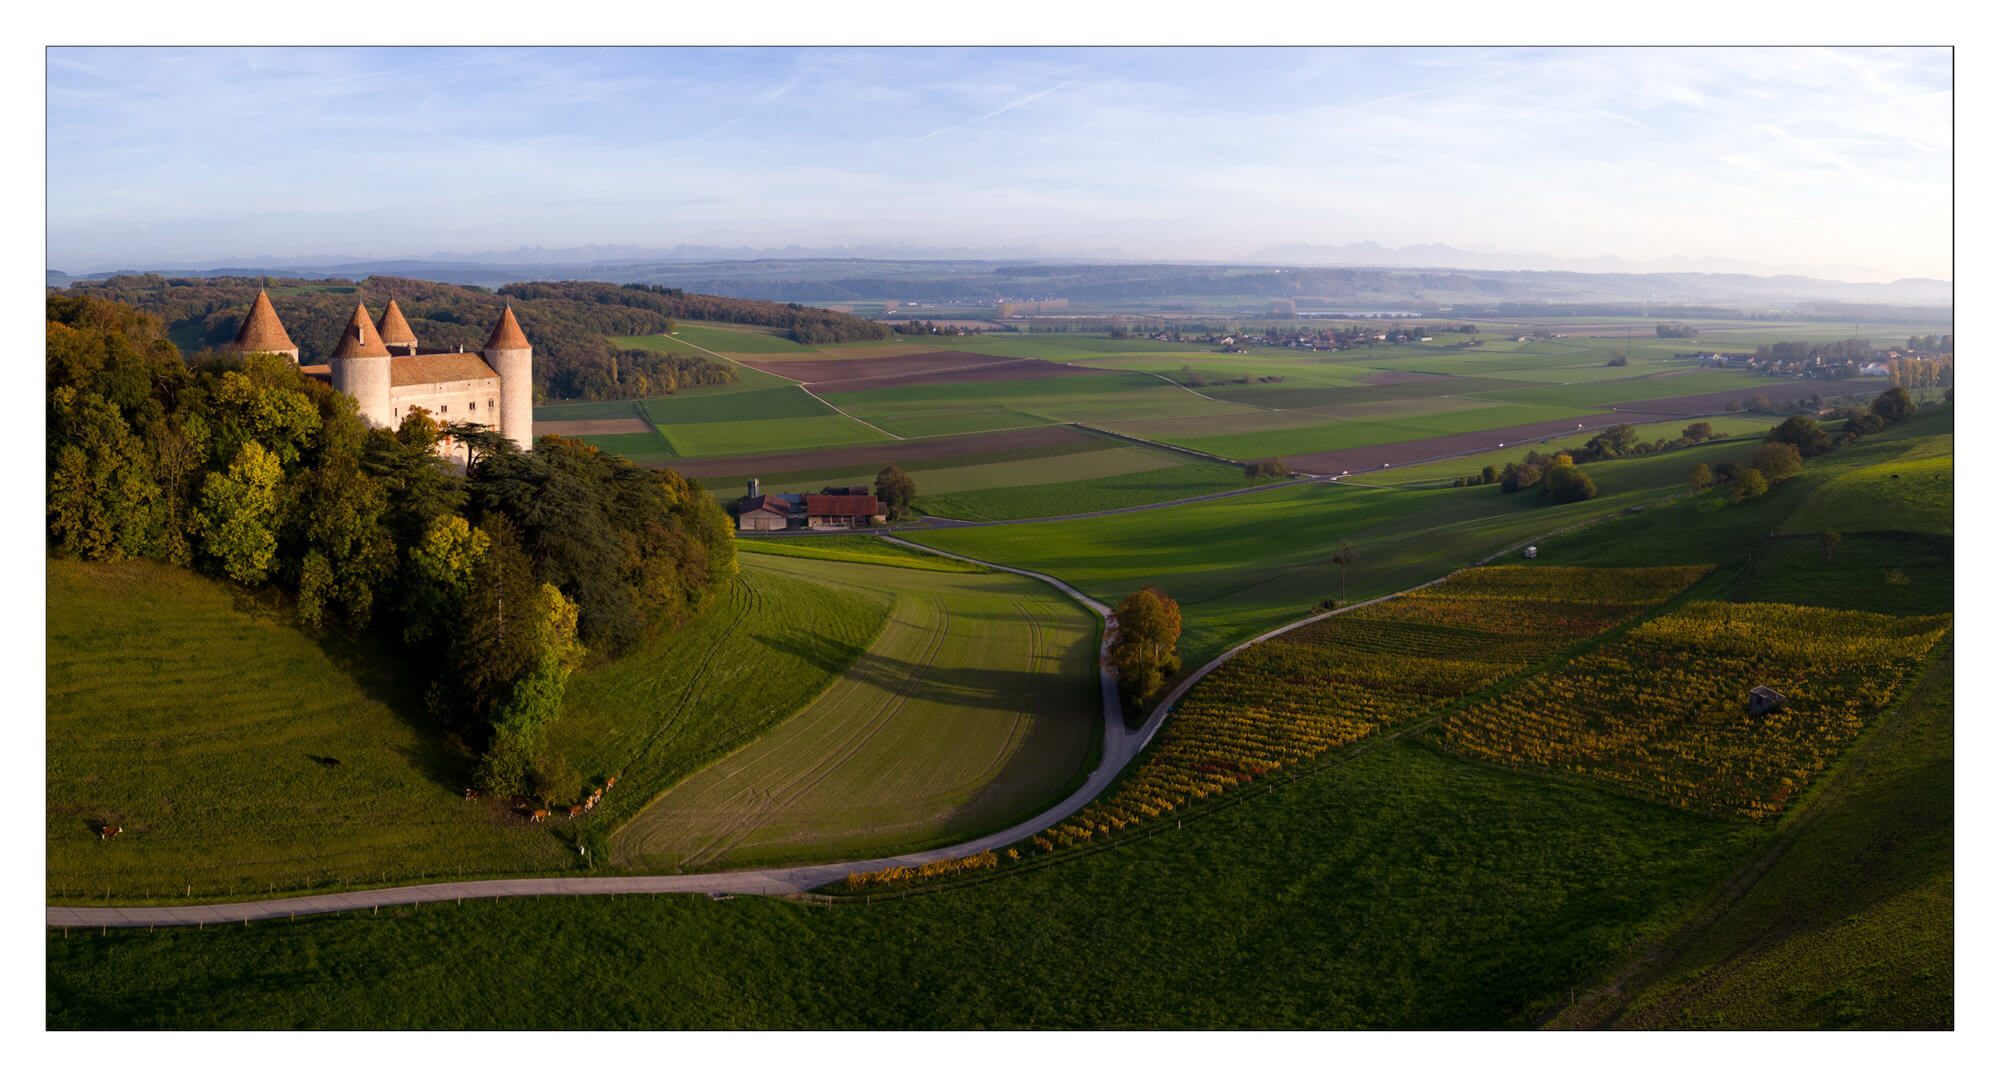 Panorama sur la plaine et sur le château de Champvent. Suisse.
Dji Mini pro 3
Automne 2022